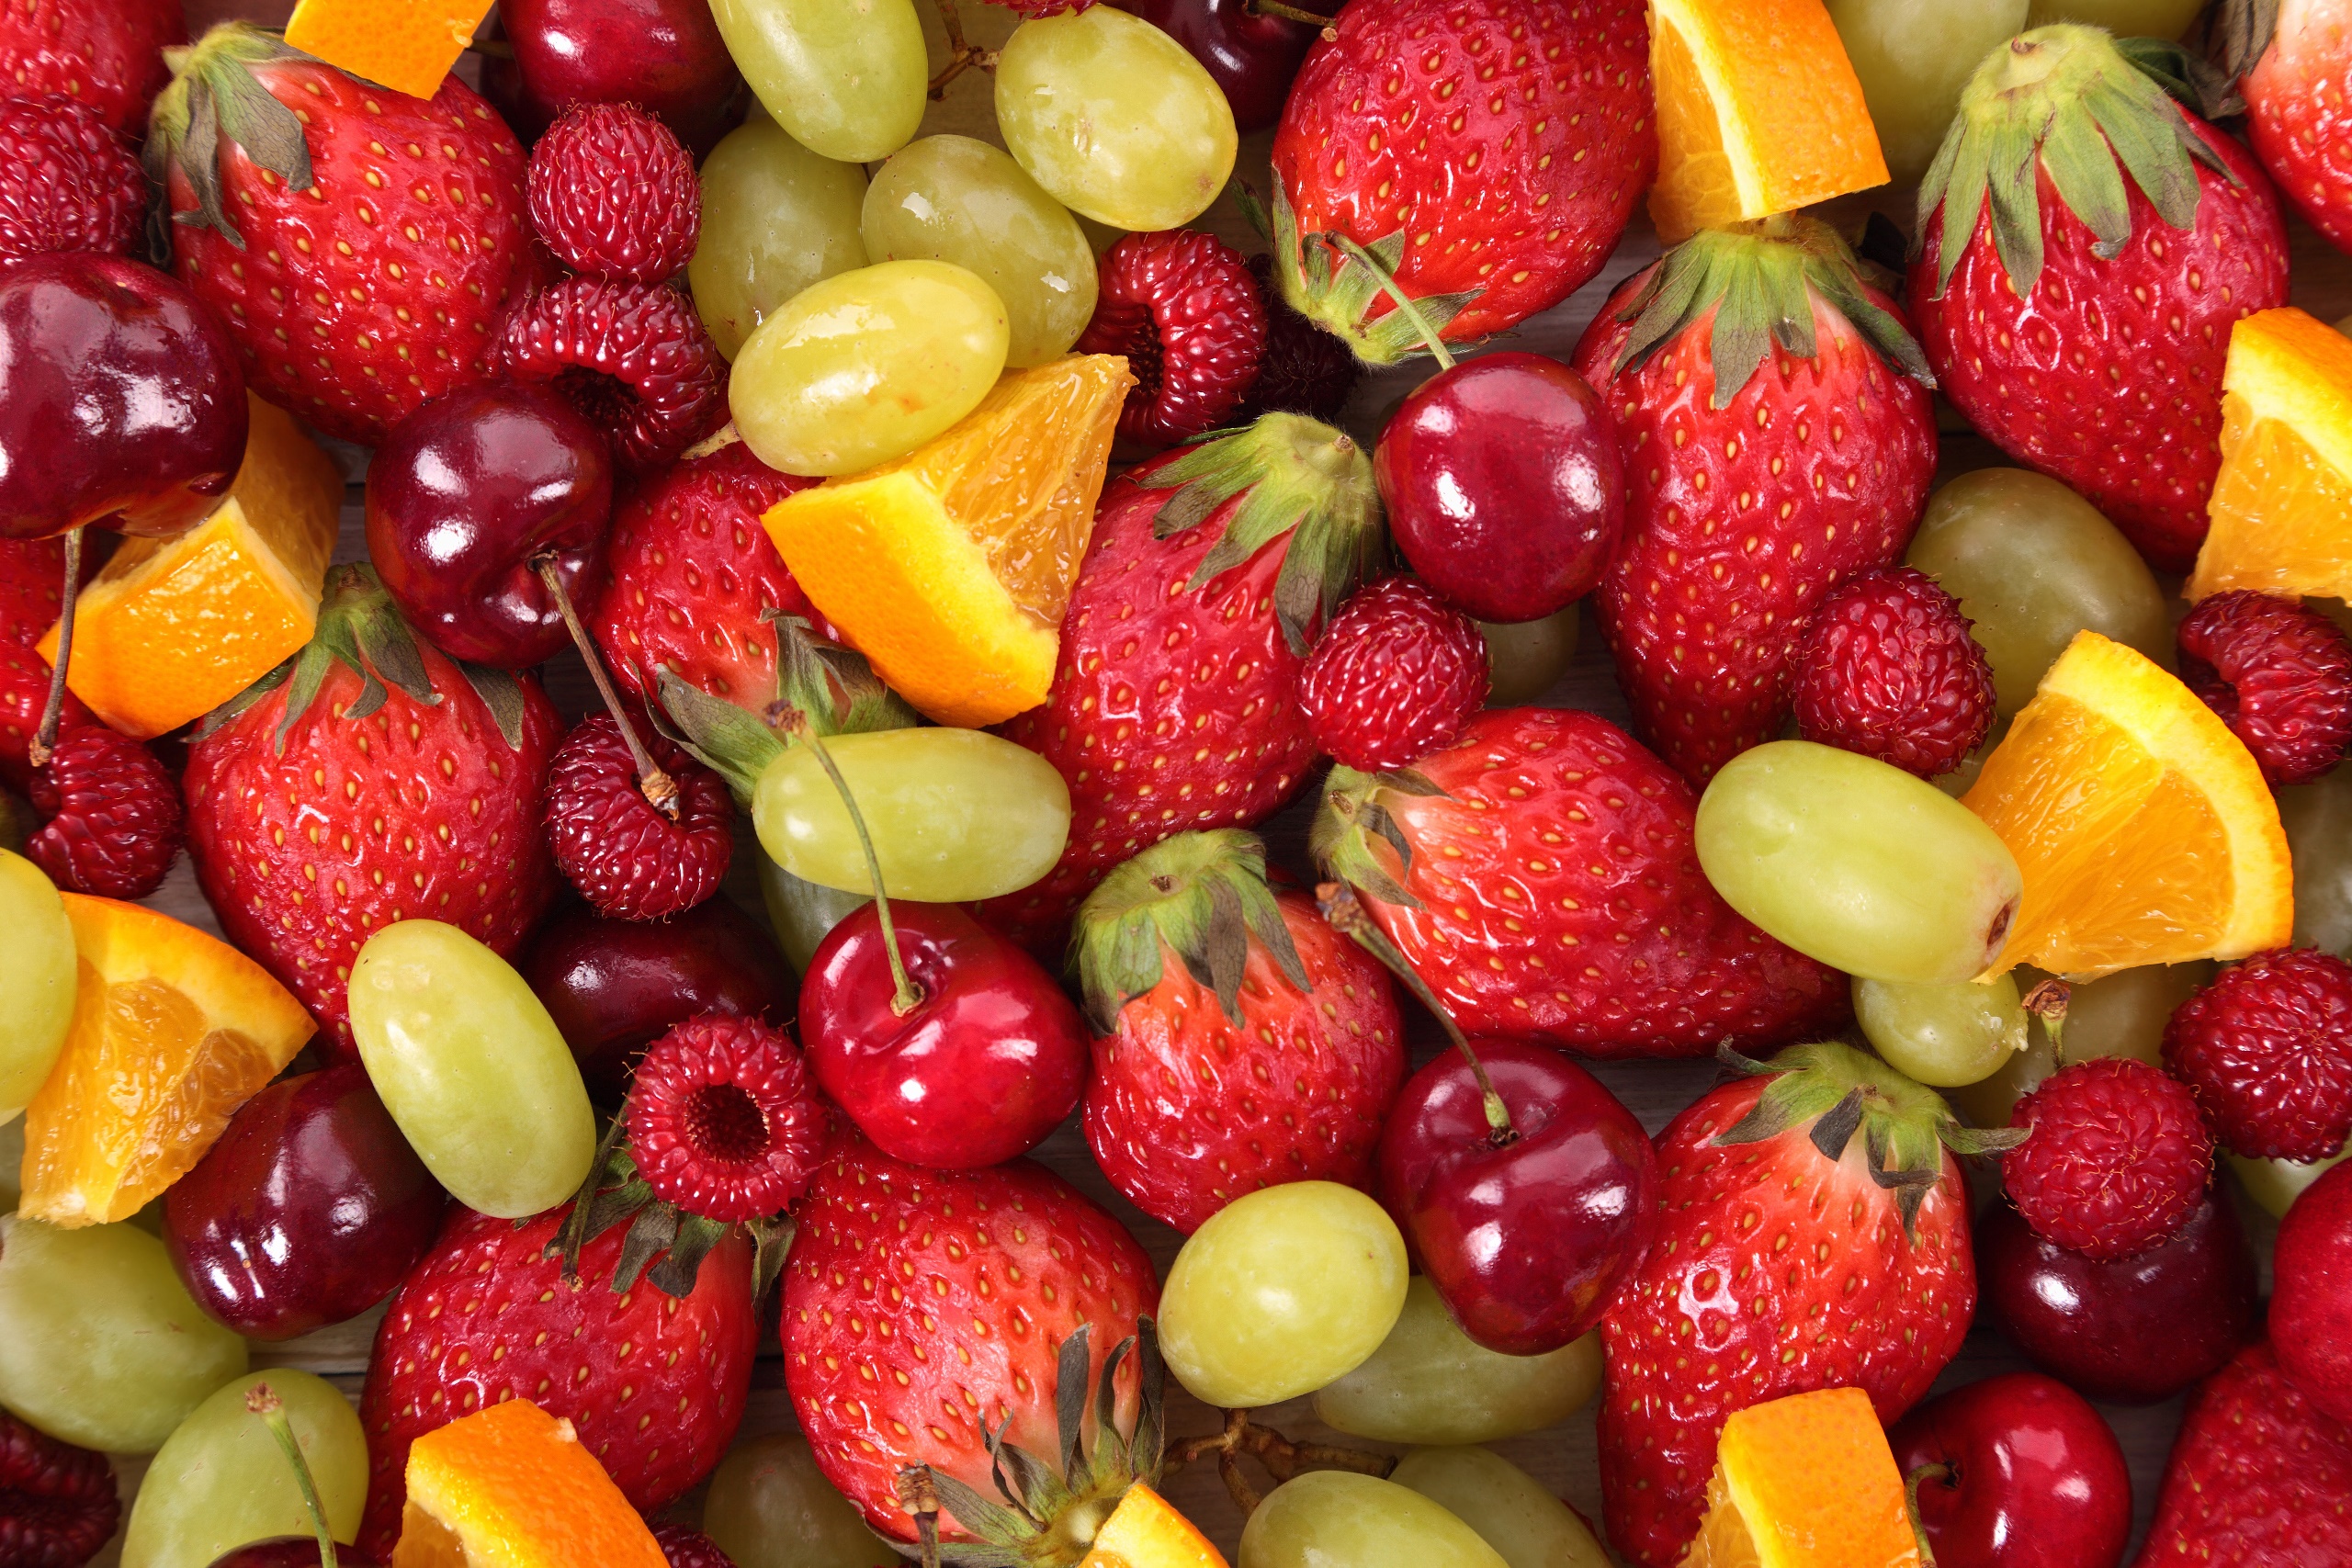 Colorful Food Fruit Berries Strawberries Cherries Orange Fruit Grapes Raspberries 2560x1707